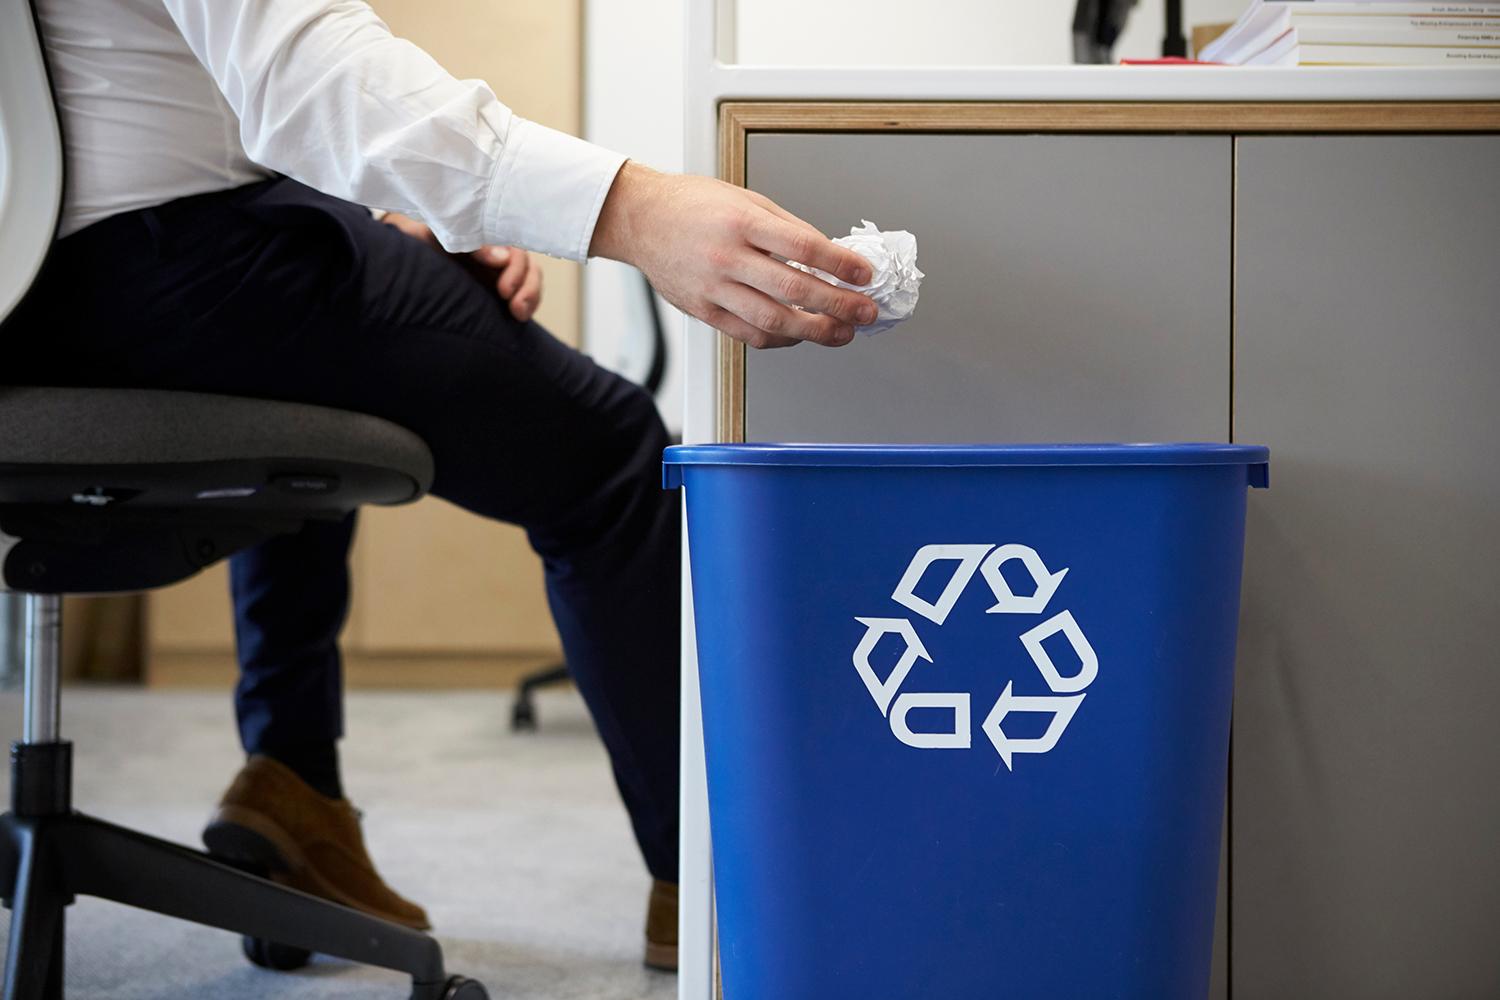 Photo: Deskside recycling bin